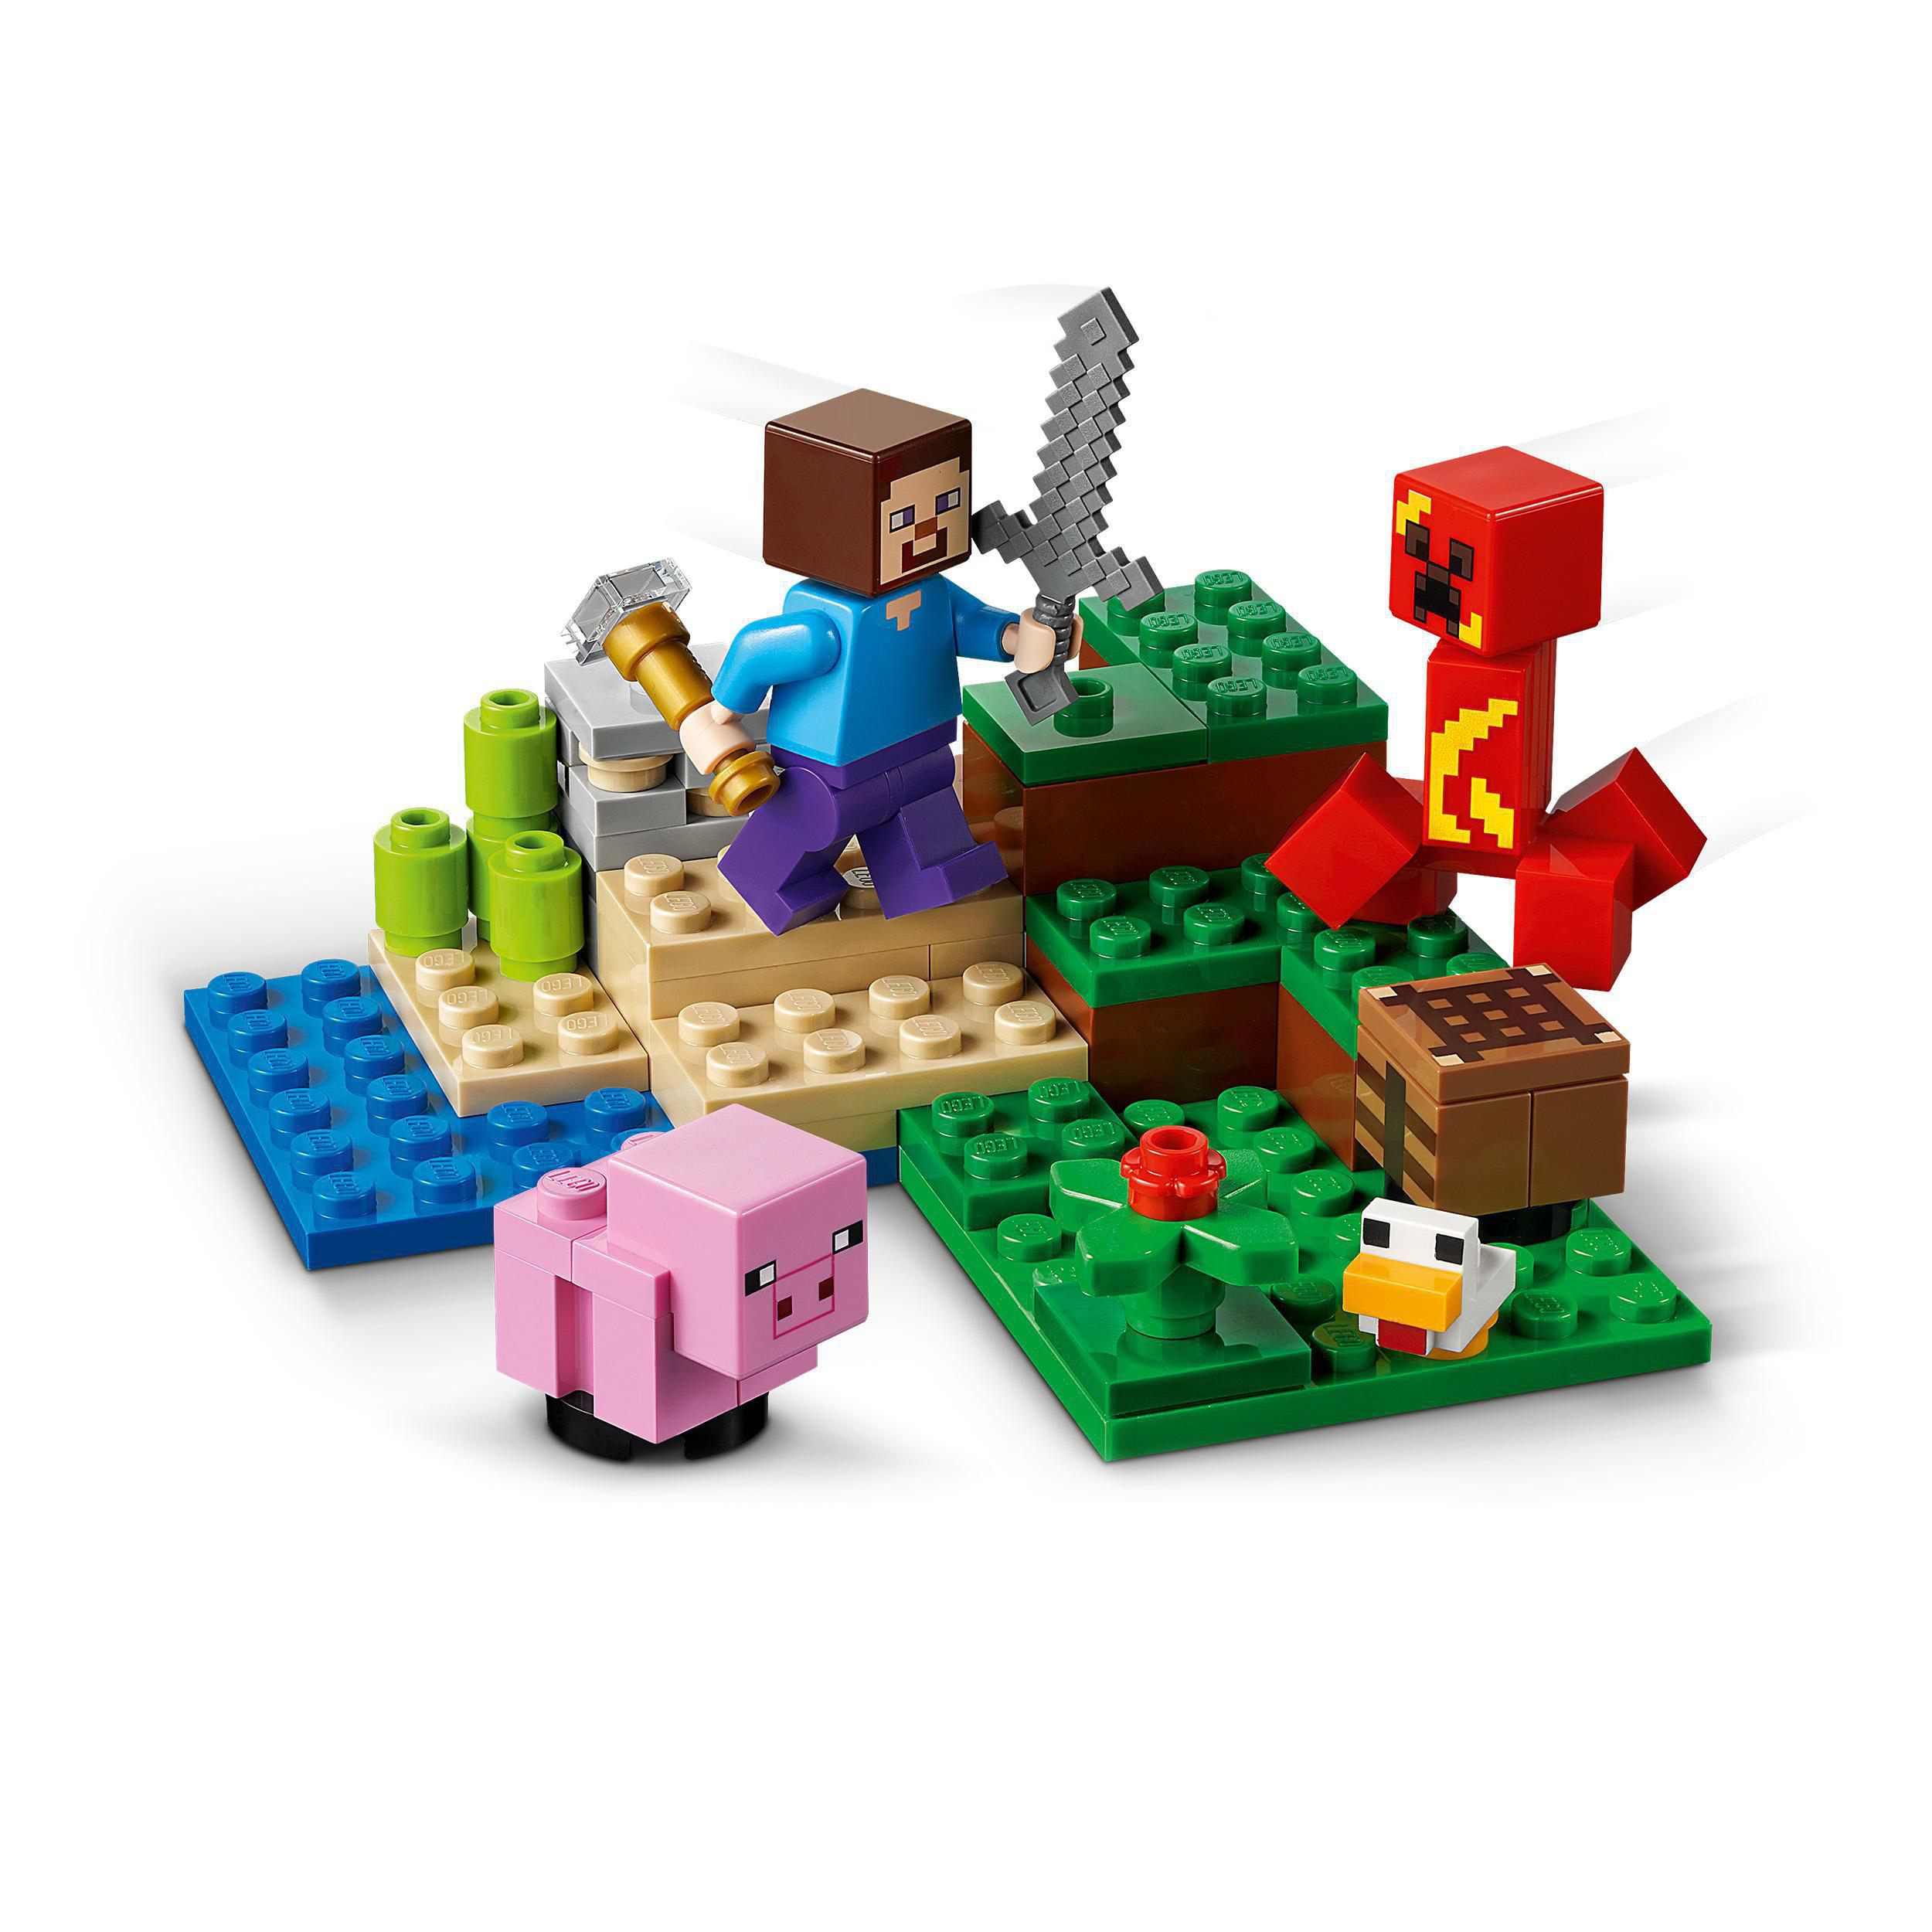 Der Creeper™ des Bausatz, Mehrfarbig Hinterhalt LEGO 21177 Minecraft